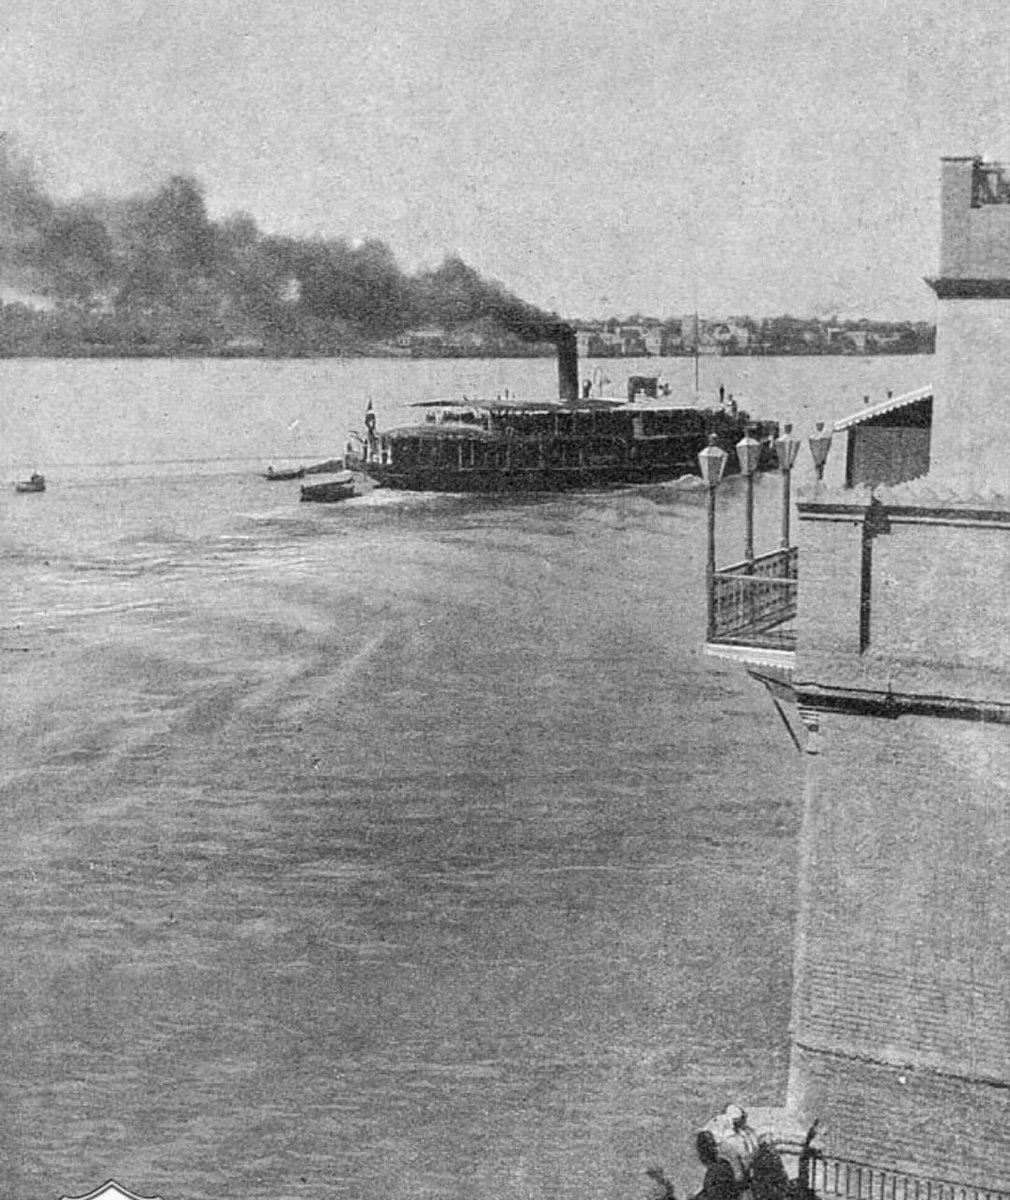 Birzamanlar Osmanlı
Bağdat Dicle limanı
1910